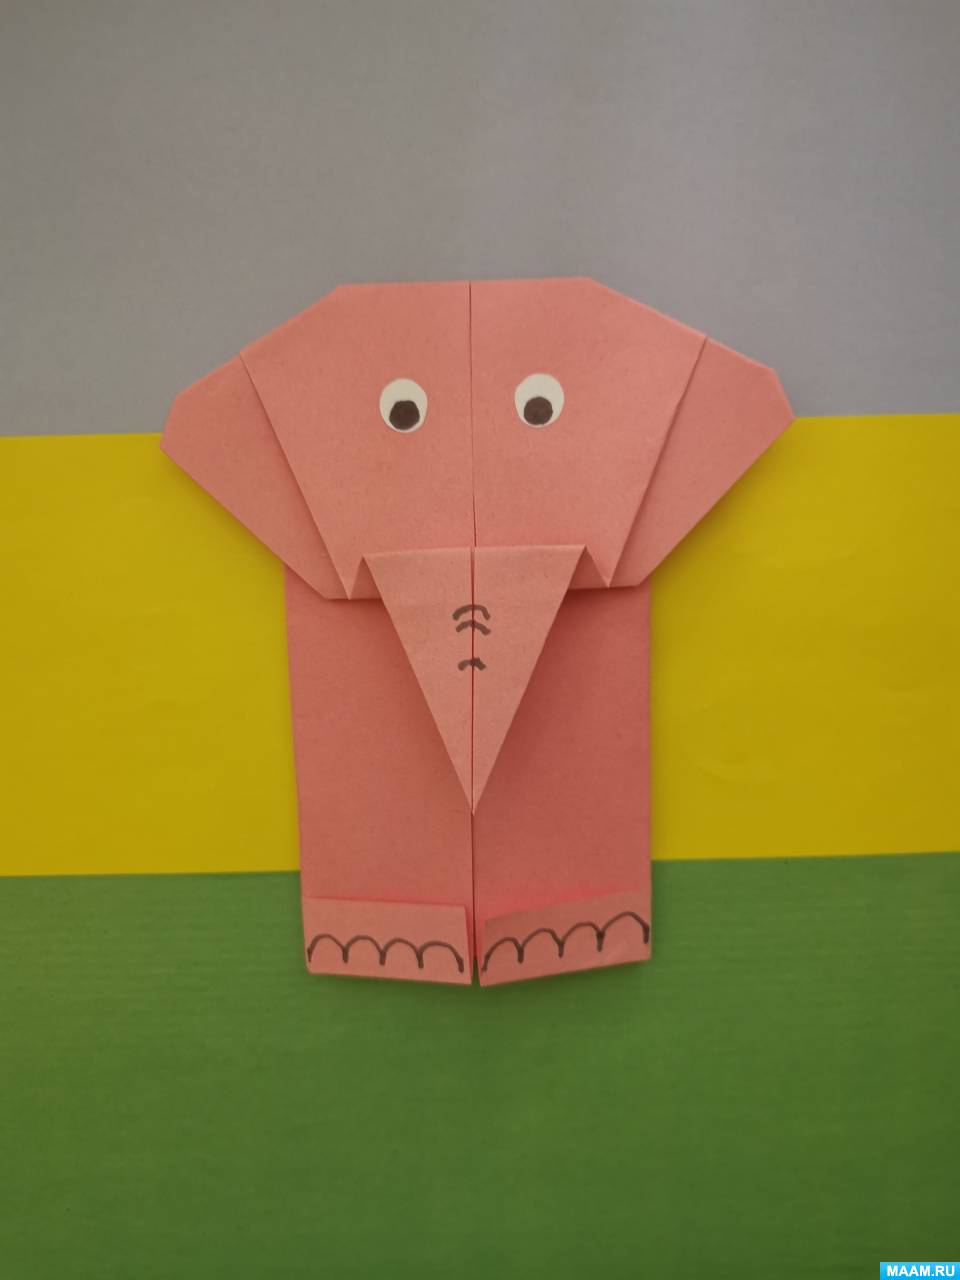 Оригами из бумаги: мастер-классы, схемы сборки, модульные оригами + видео